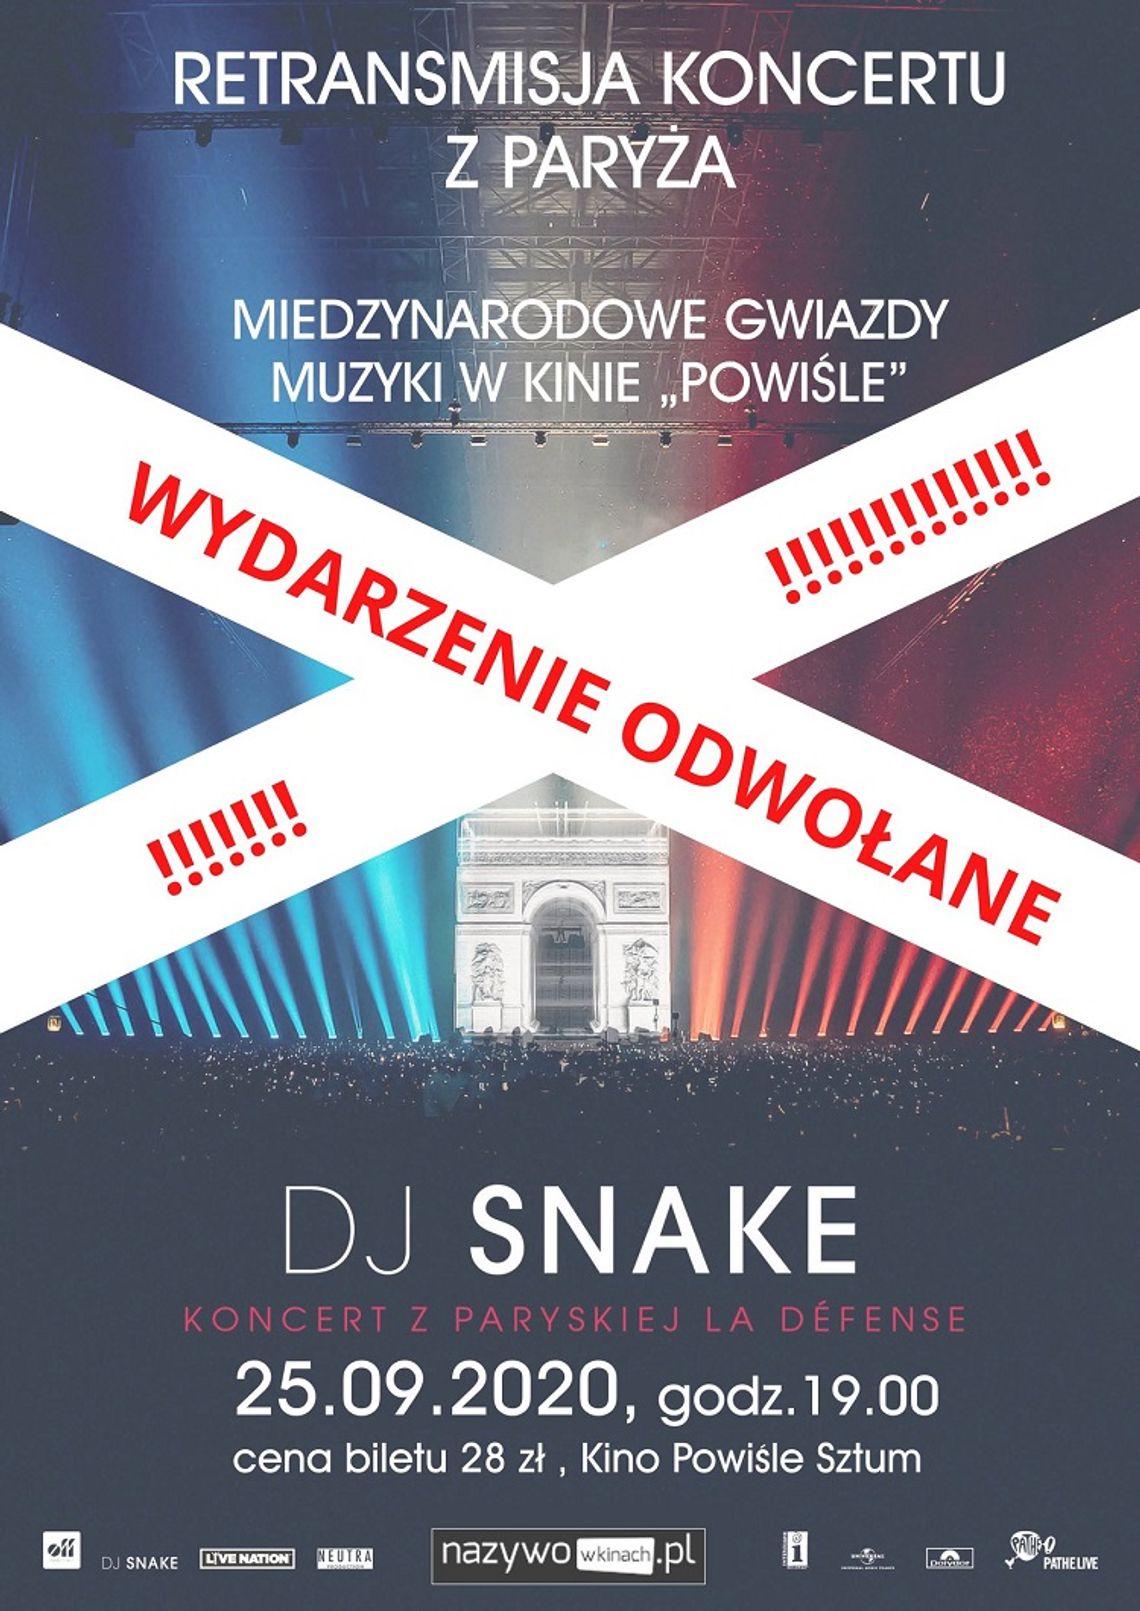 Retransmisja koncertu DJ-a Snake’a z Paryża w sztumskim kinie odwołana.